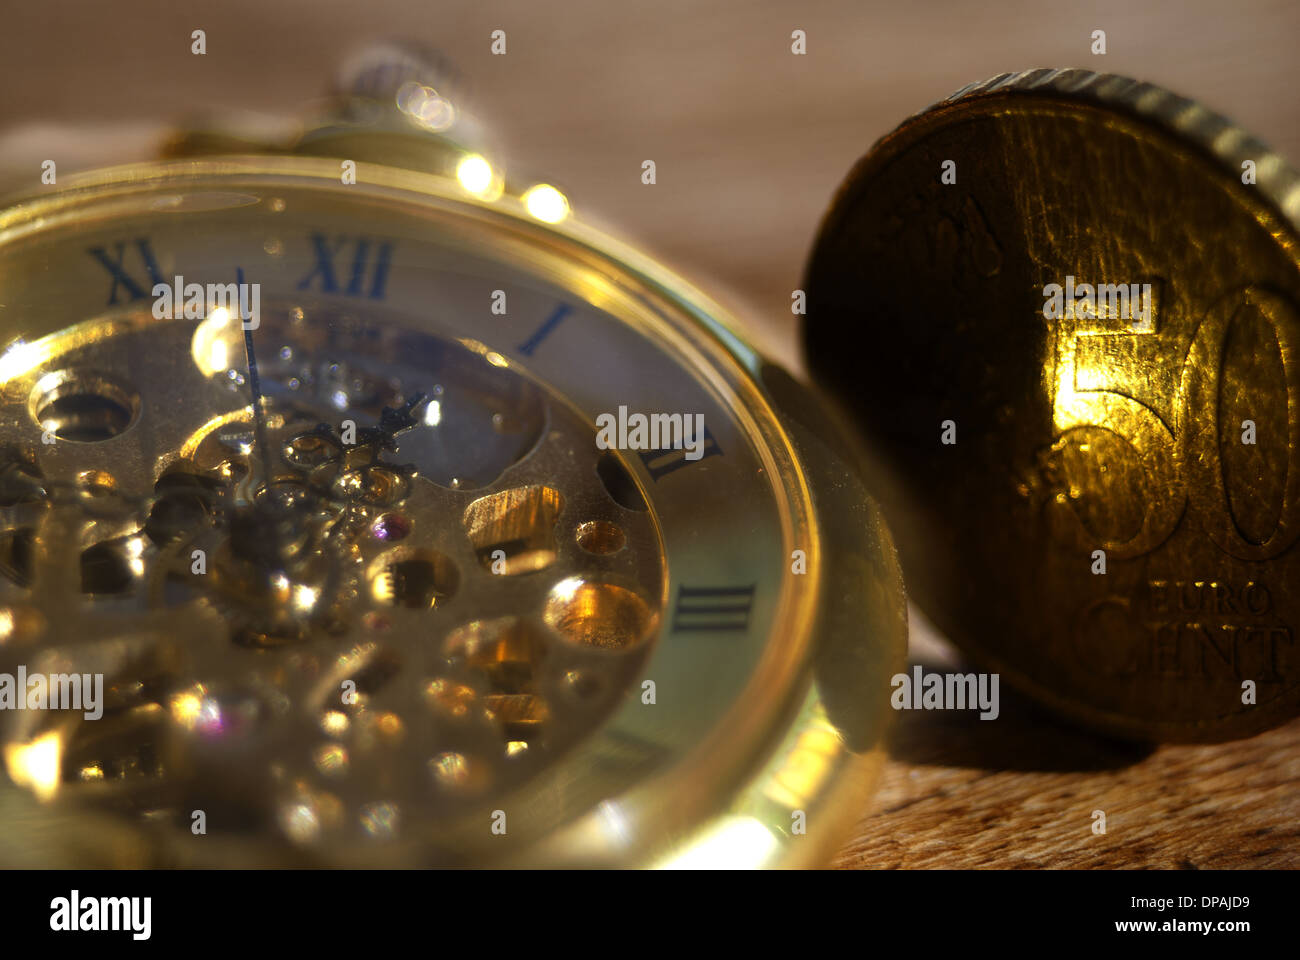 Economia, finanza e gestione del tempo: immagine concettuale Foto Stock